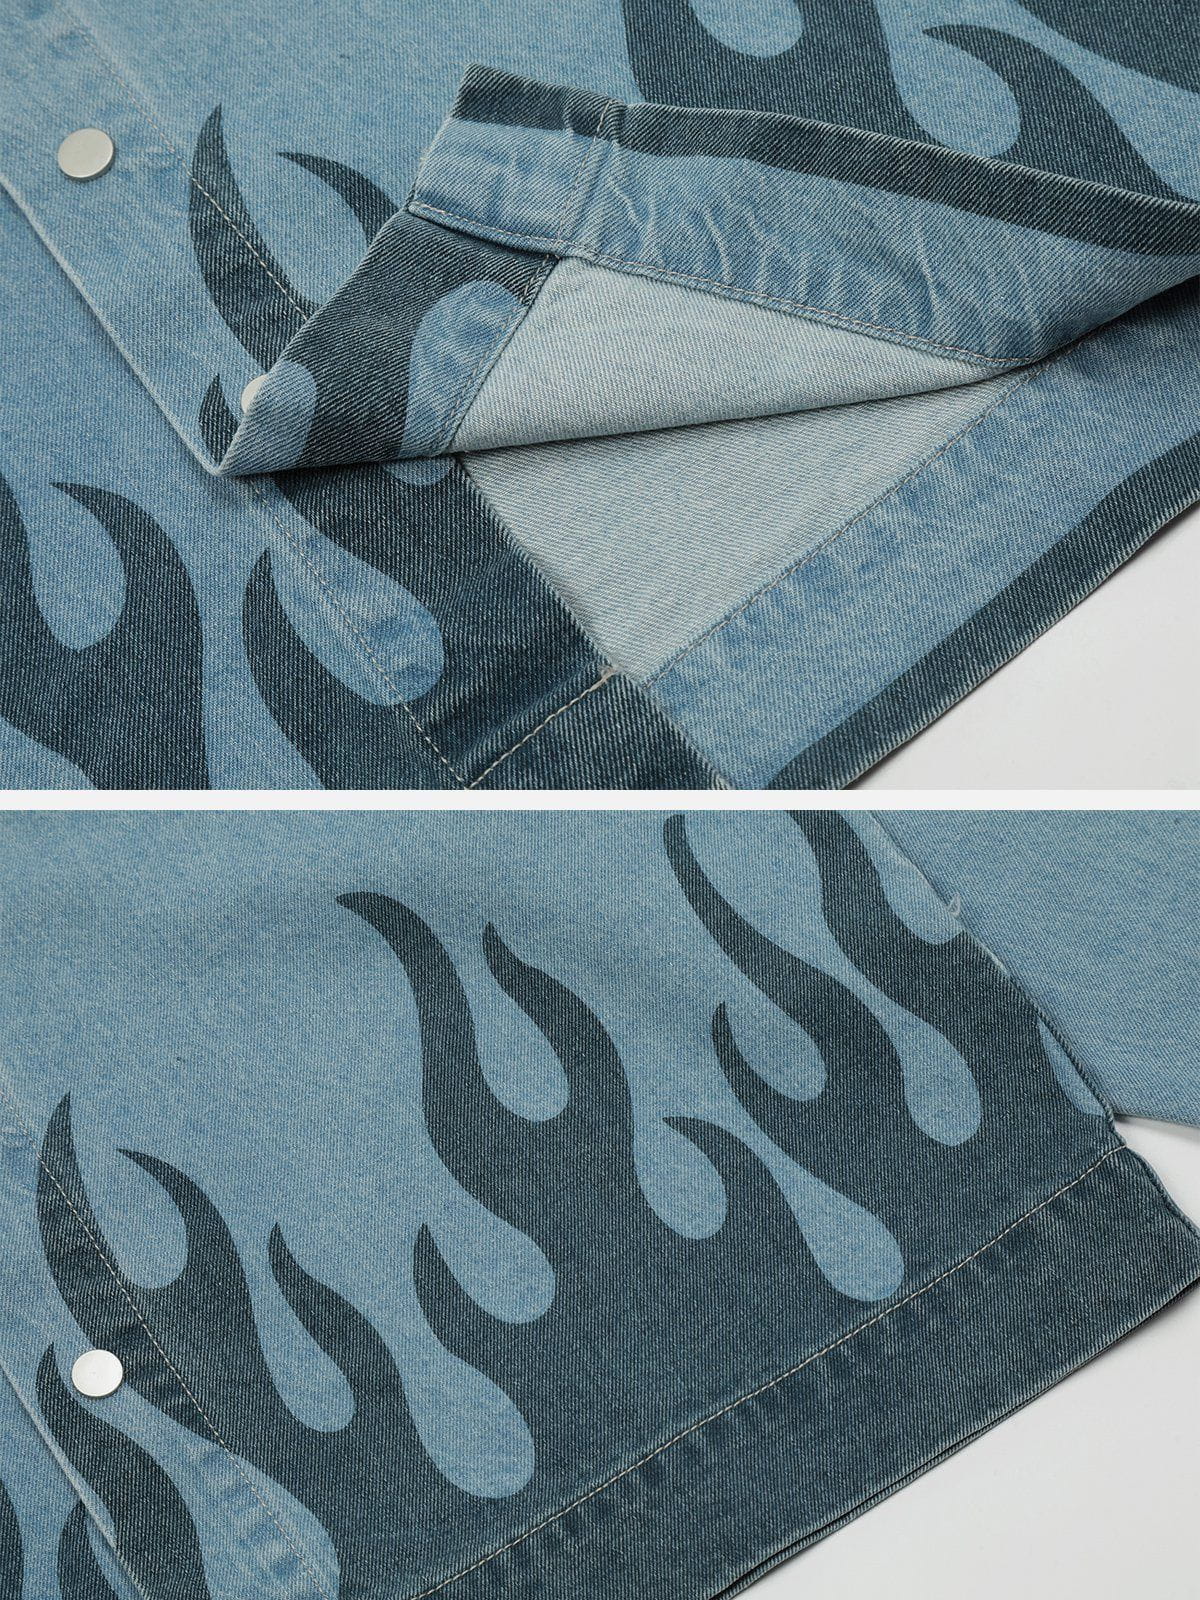 Eprezzy® - Flame Print Denim Jacket Streetwear Fashion - eprezzy.com